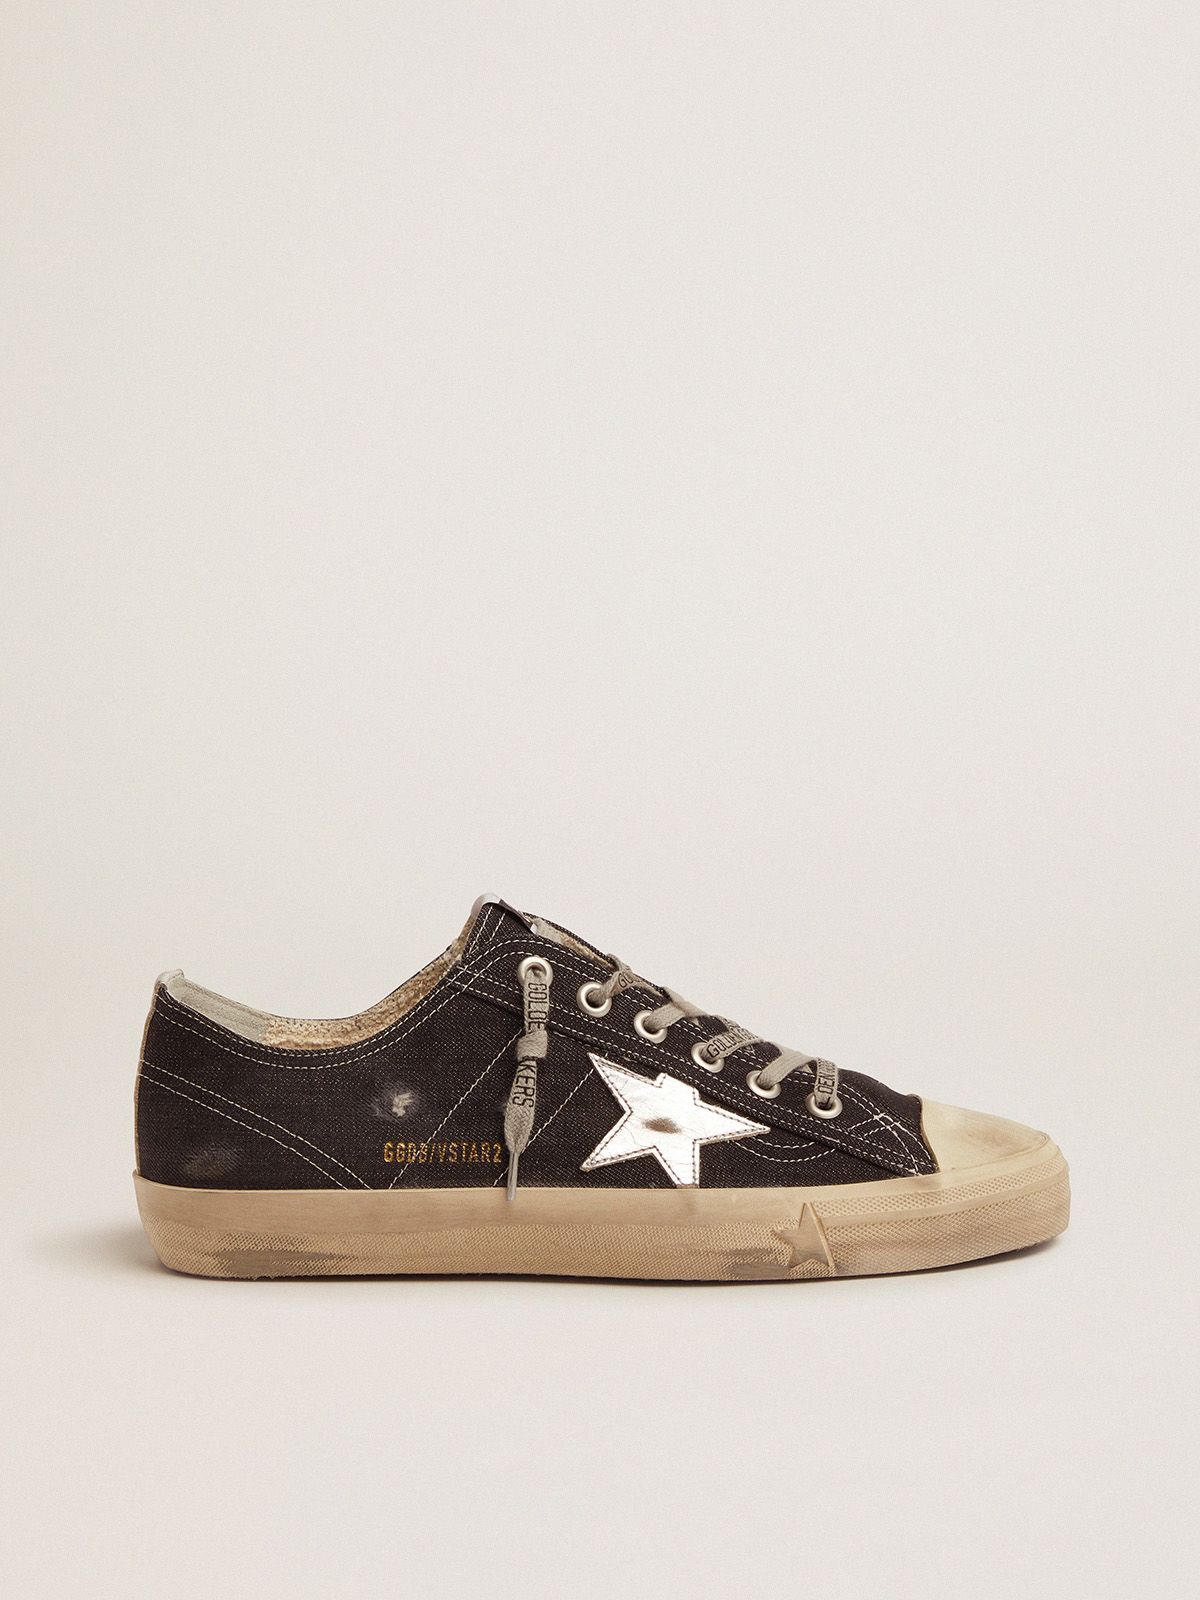 Golden Goose Saldo Uomo V-Star LTD sneakers in denim with silver star and vertical strip